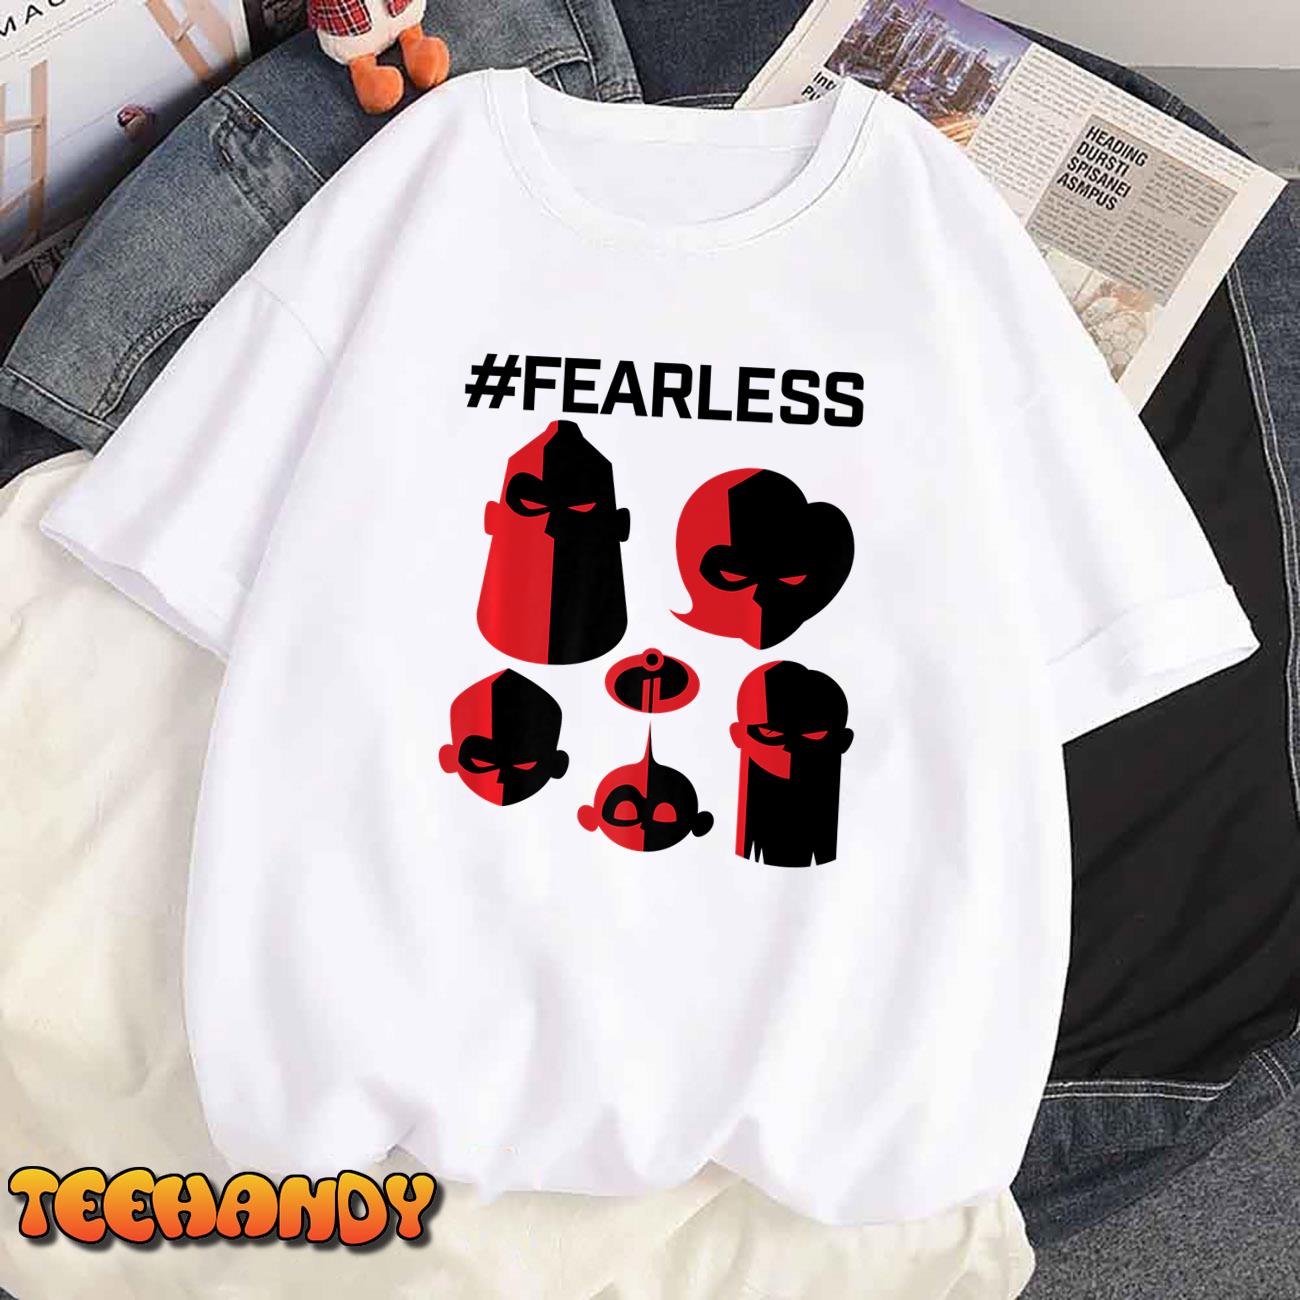 Disney Pixar Incredibles 2 Fearless Family Premium T-Shirt